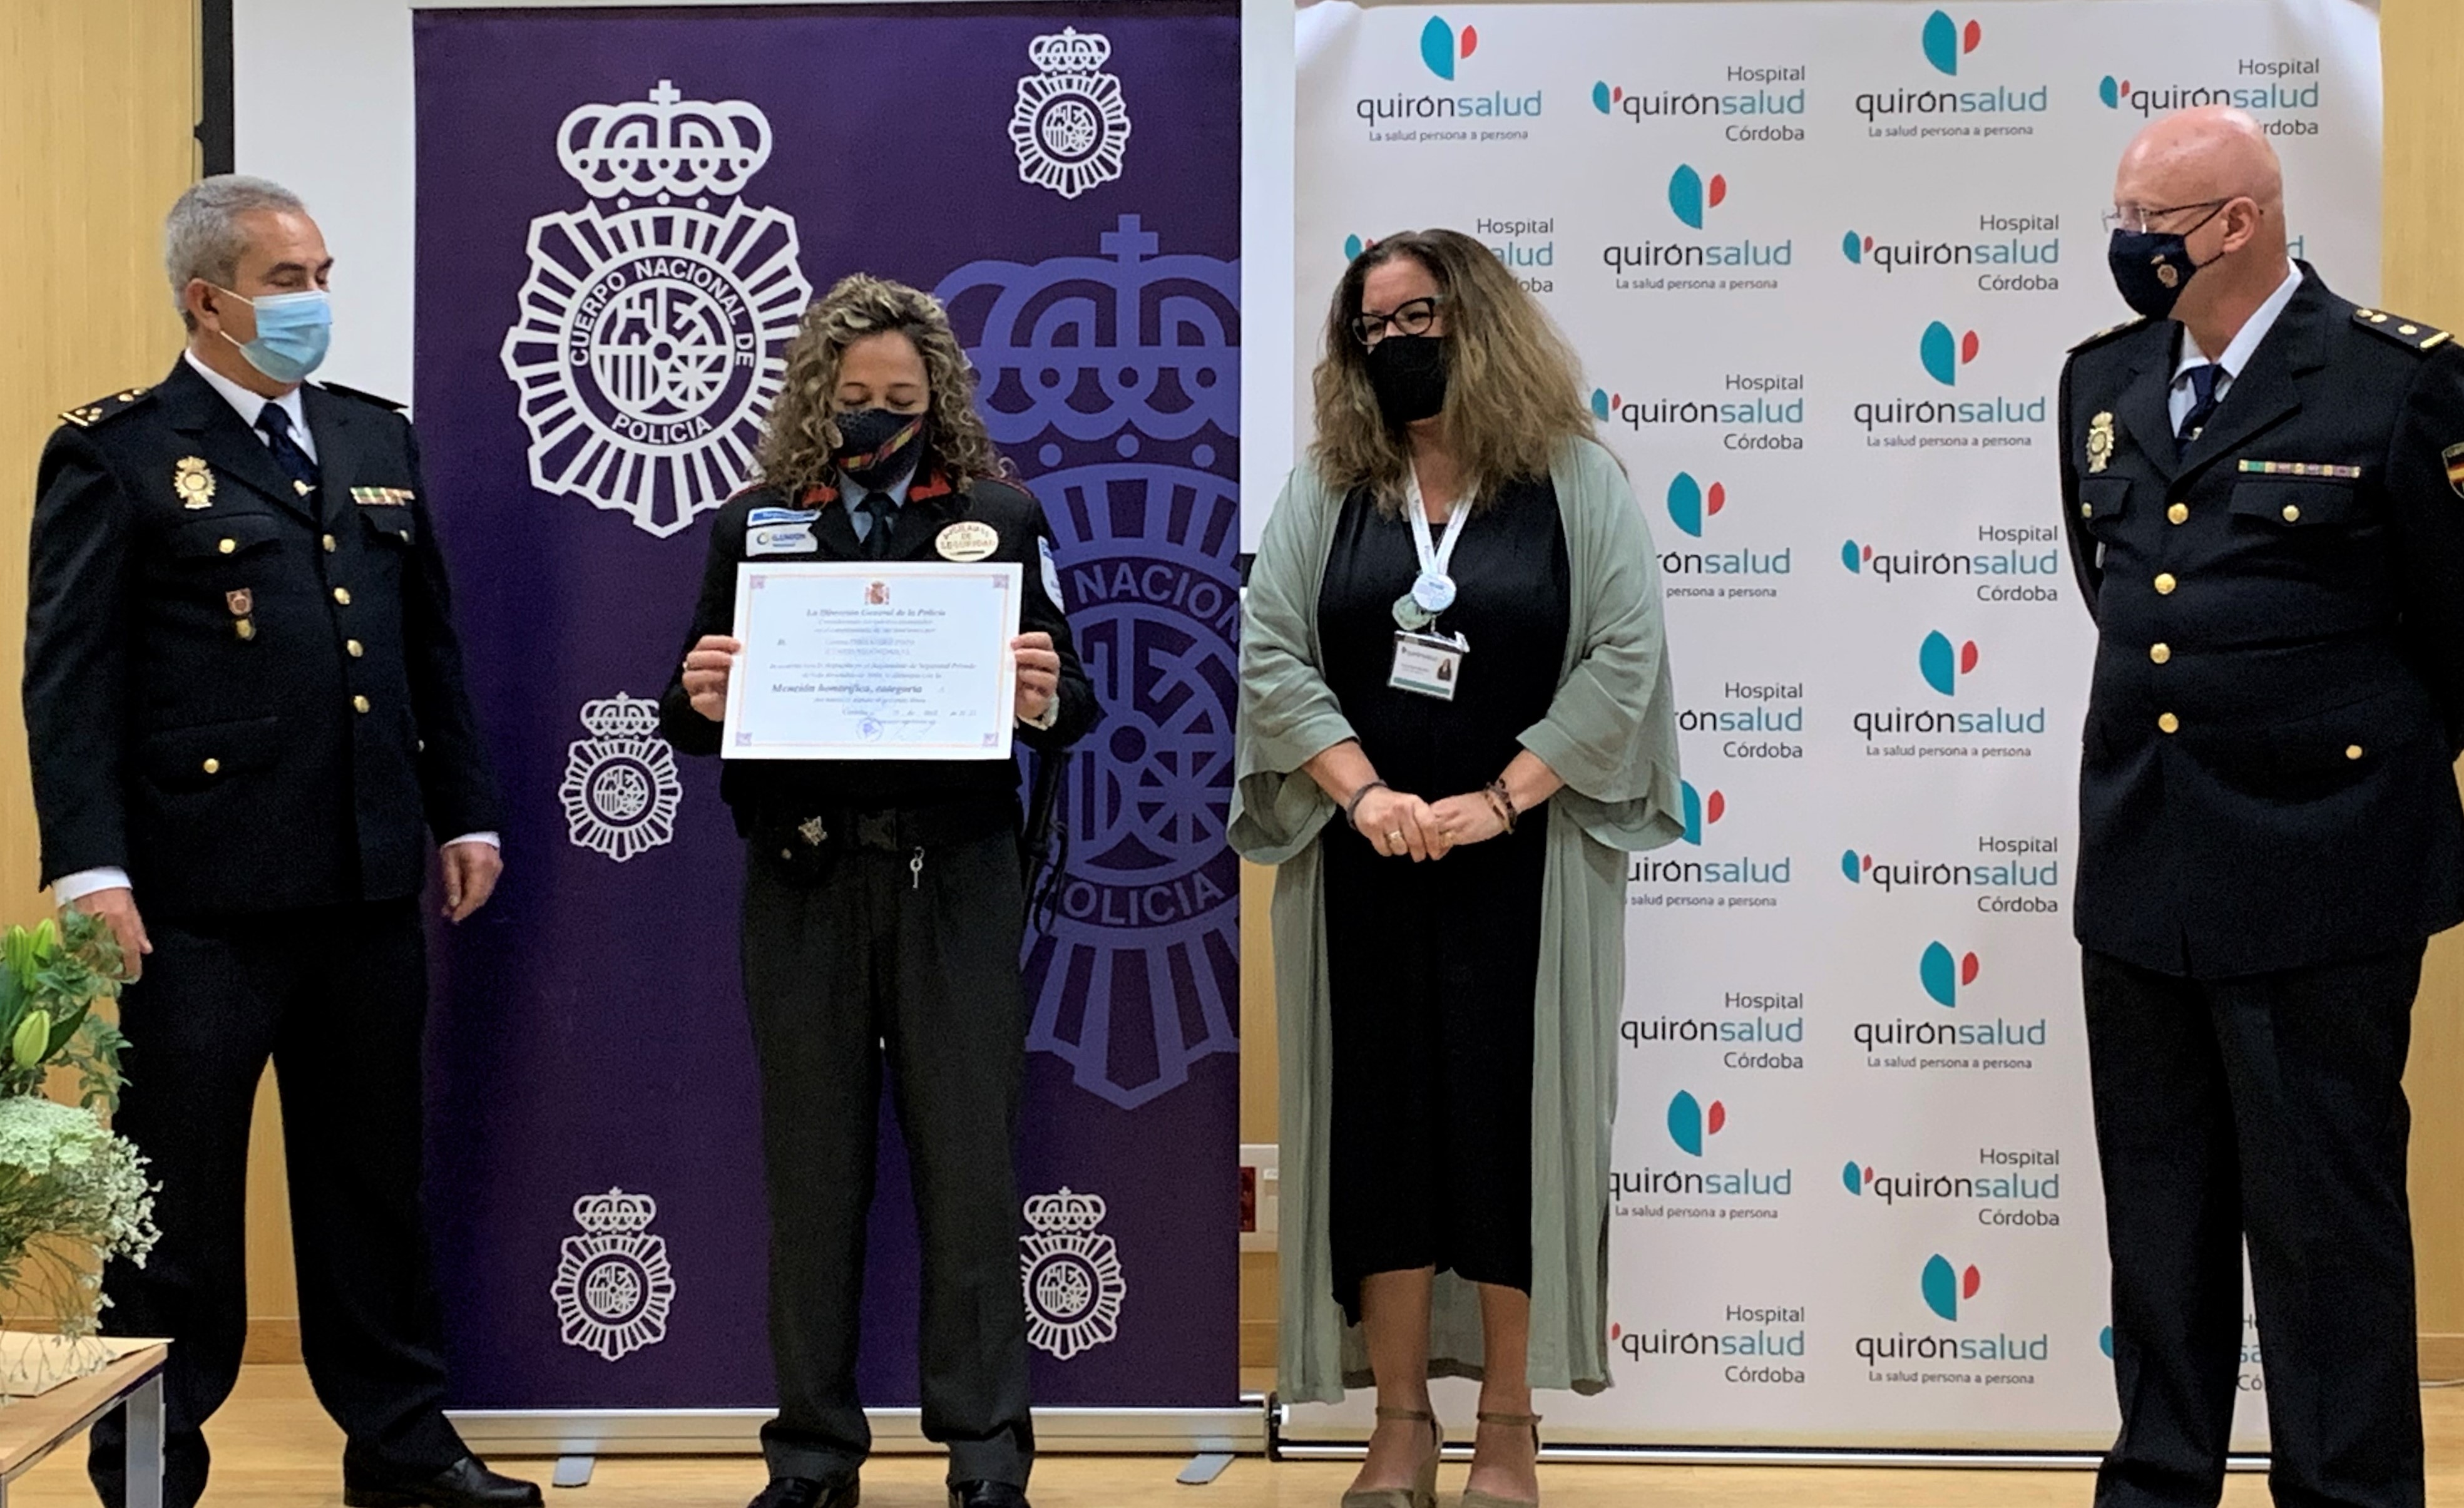 Cristina Fernández, vigilante de seguridad del Hiospital Quirónsalud Córdoba recibe el reconocimiento de la Policía Nacional